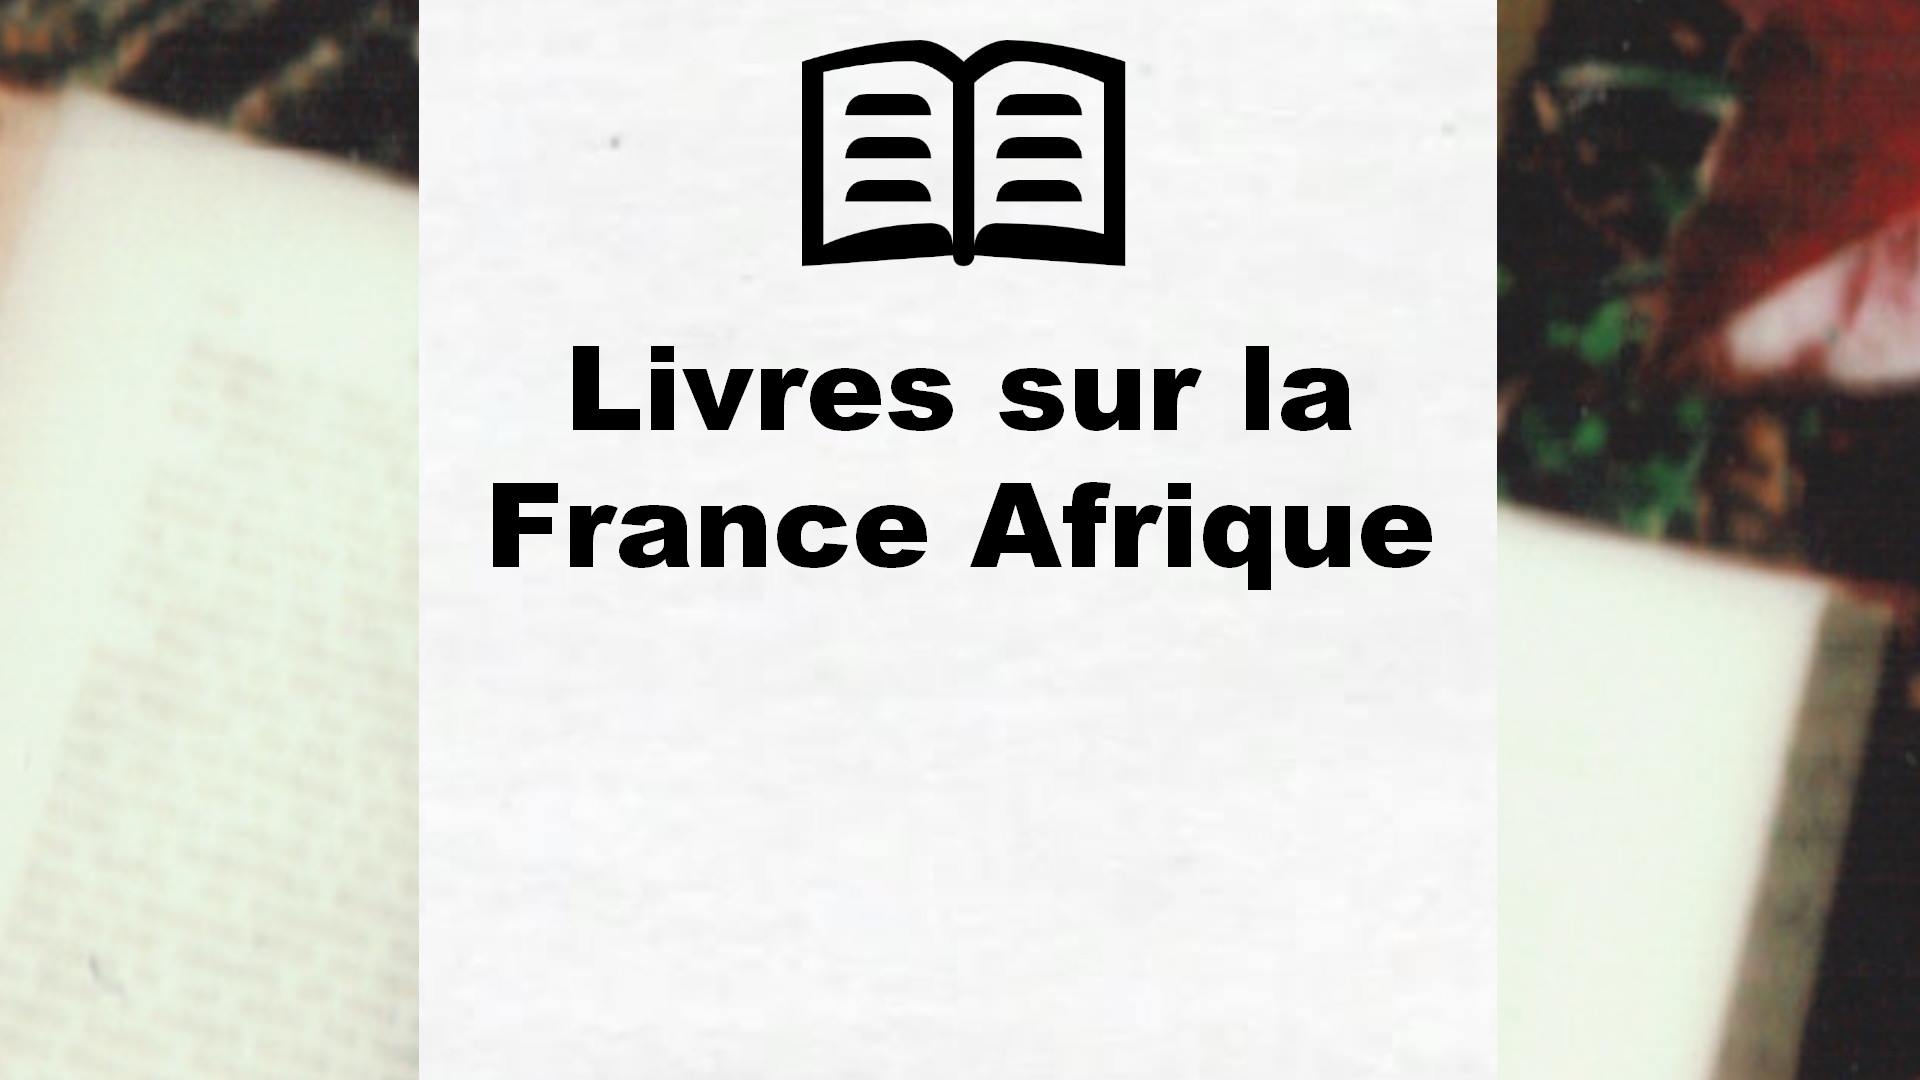 Livres sur la France Afrique